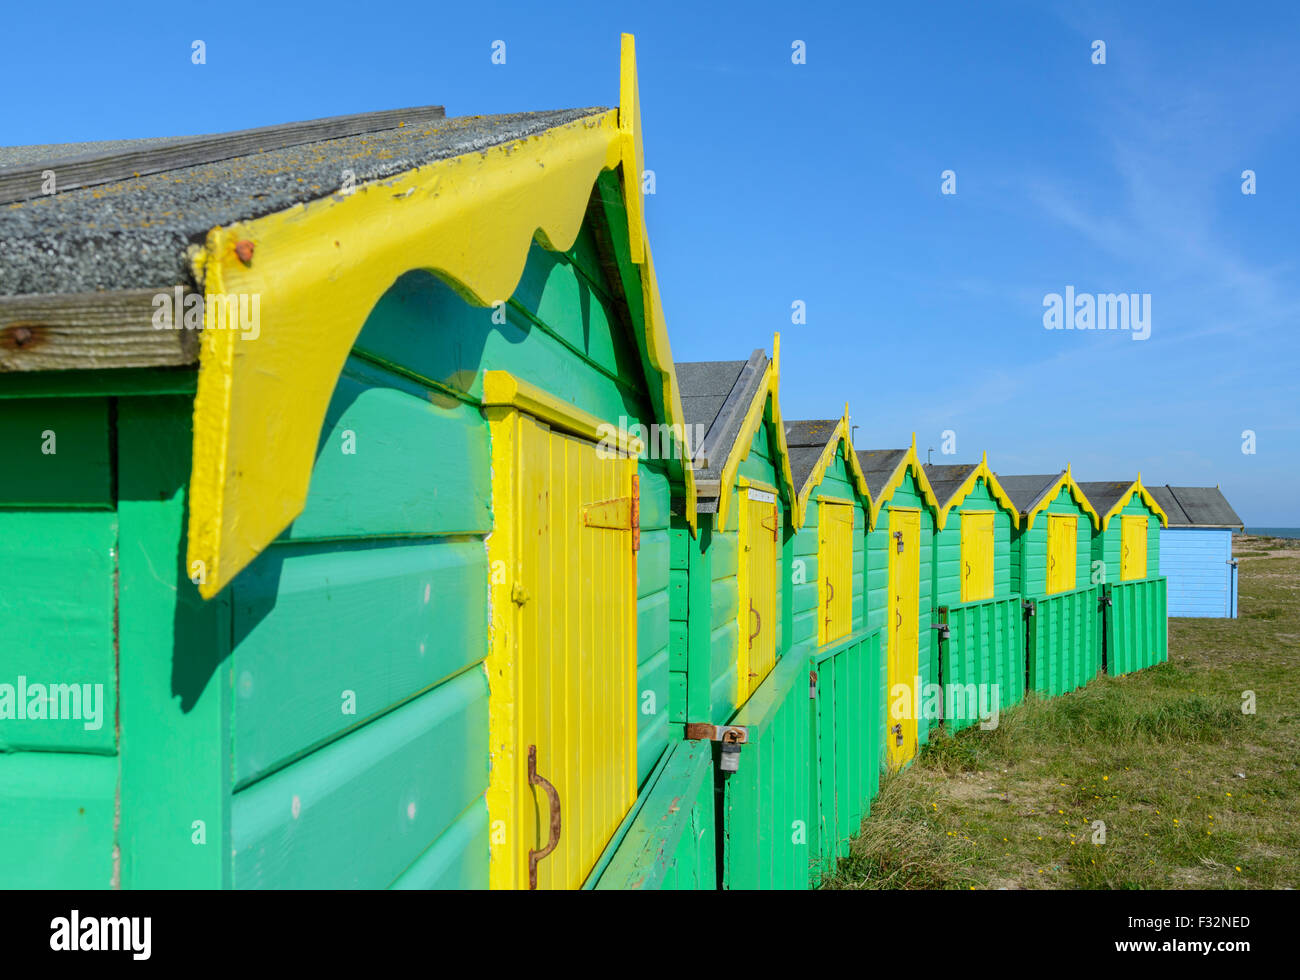 Badehäuschen UK. Reihe von grünen und gelben Strand Hütten an einem sonnigen Tag mit blauem Himmel in Littlehampton, West Sussex, England, UK. Stockfoto